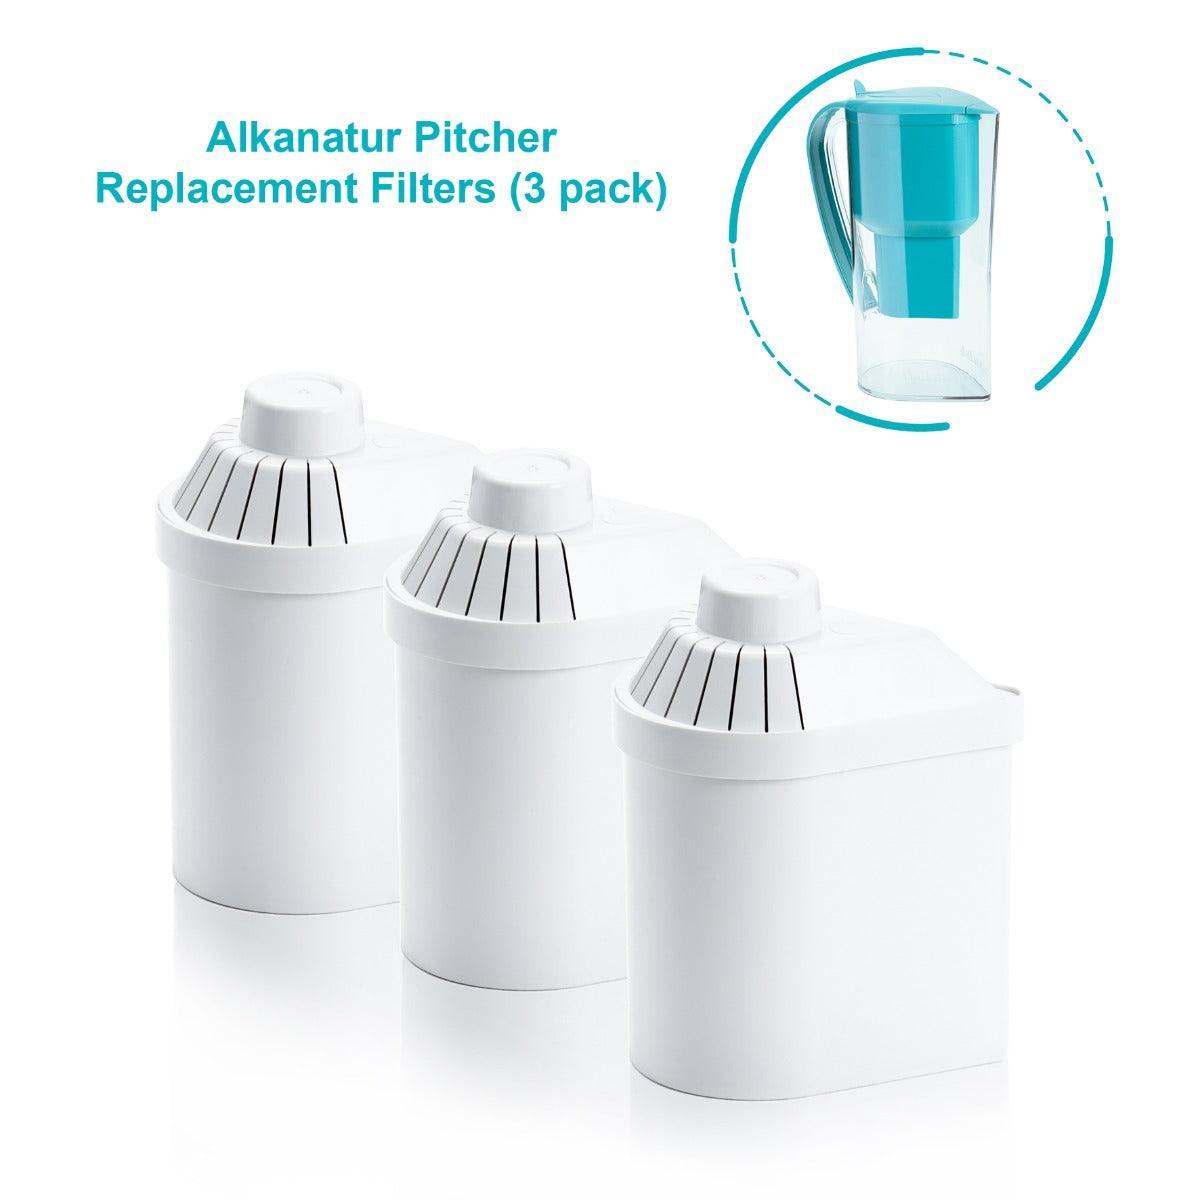 Alkanatur Pitcher Replacement Filter 3 Pack - Alkaline World